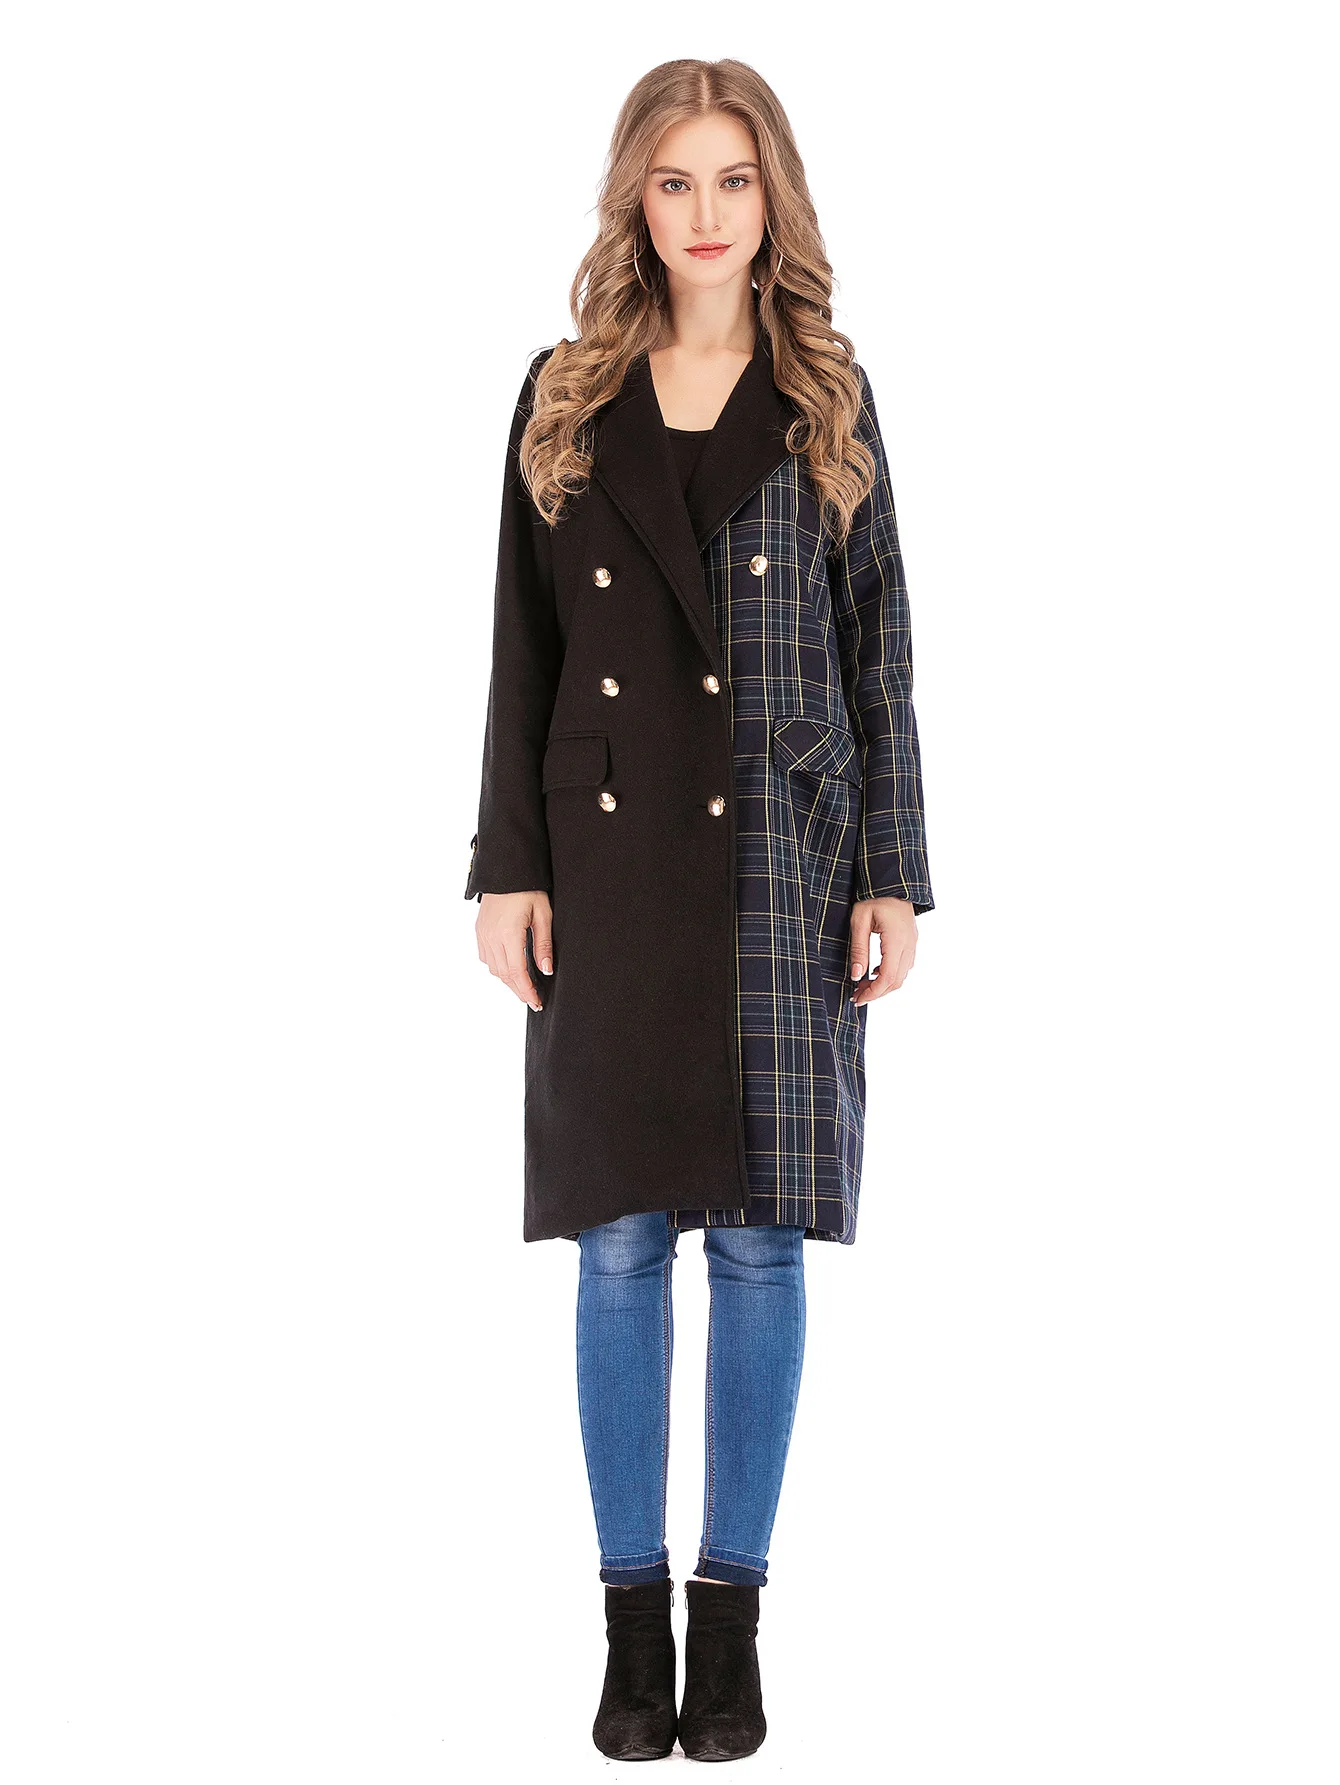 Классическое шерстяное пальто в клетку, женское двубортное длинное повседневное пальто, женский элегантный шерстяной пиджак, черная женская уличная куртка